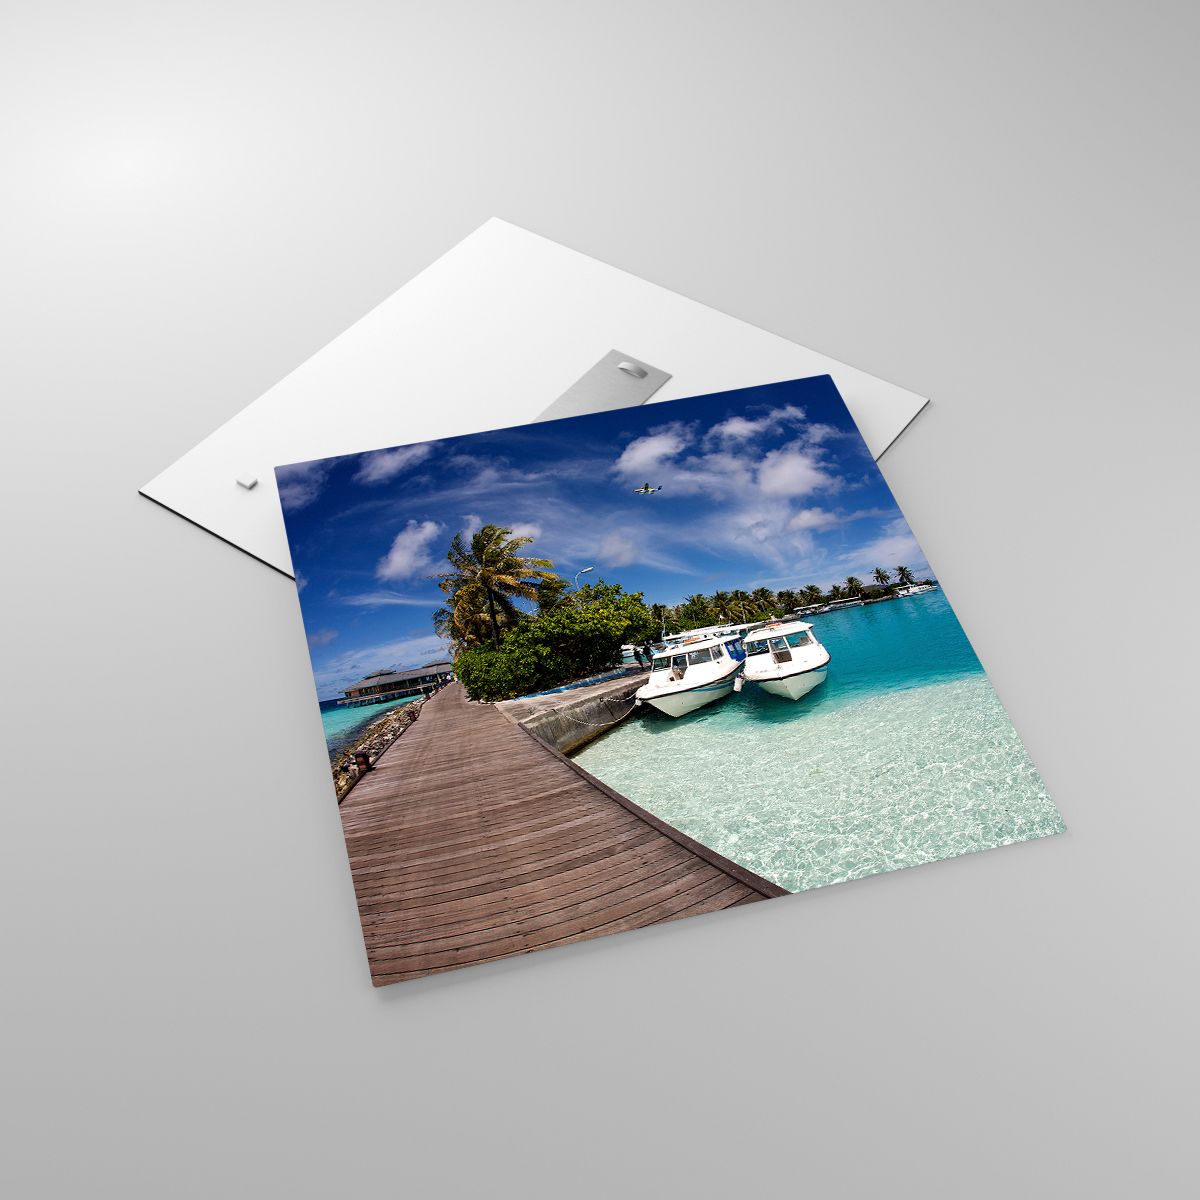 Quadri Paesaggio, Quadri Paradiso, Quadri Mare, Quadri Maldive, Quadri Viaggi